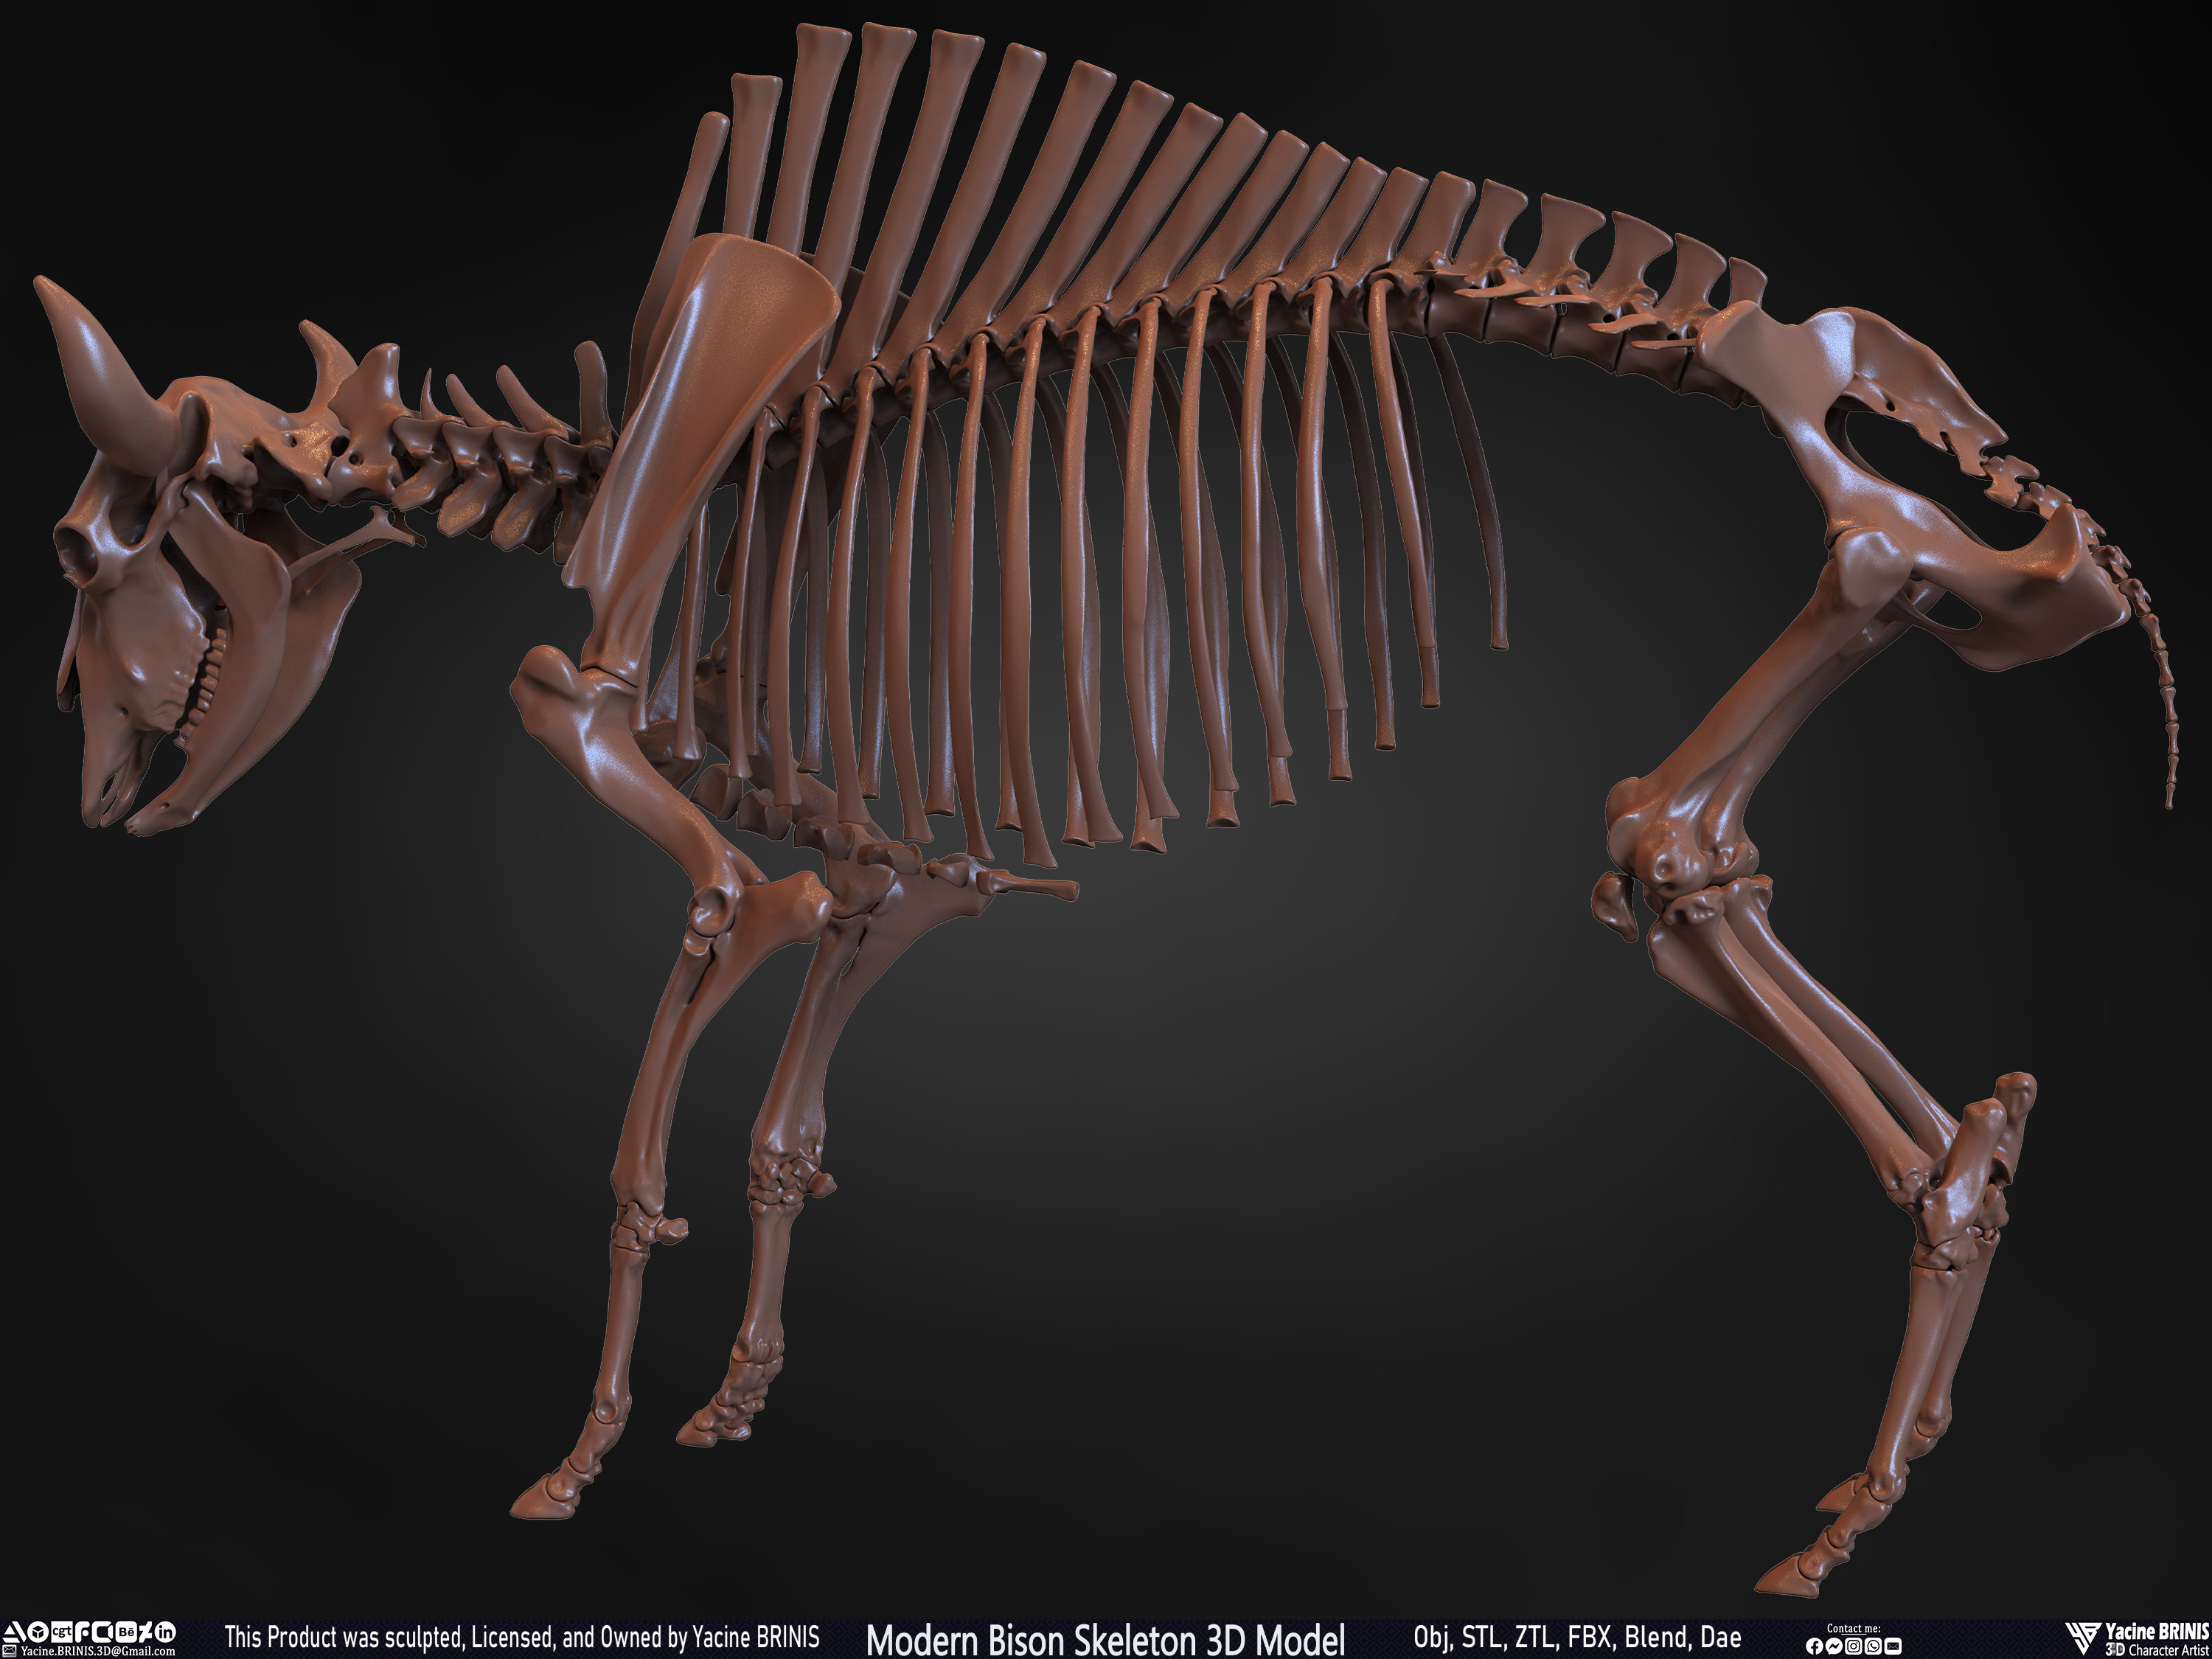 Modern Bison Skeleton 3D Model Sculpted by Yacine BRINIS Set 019